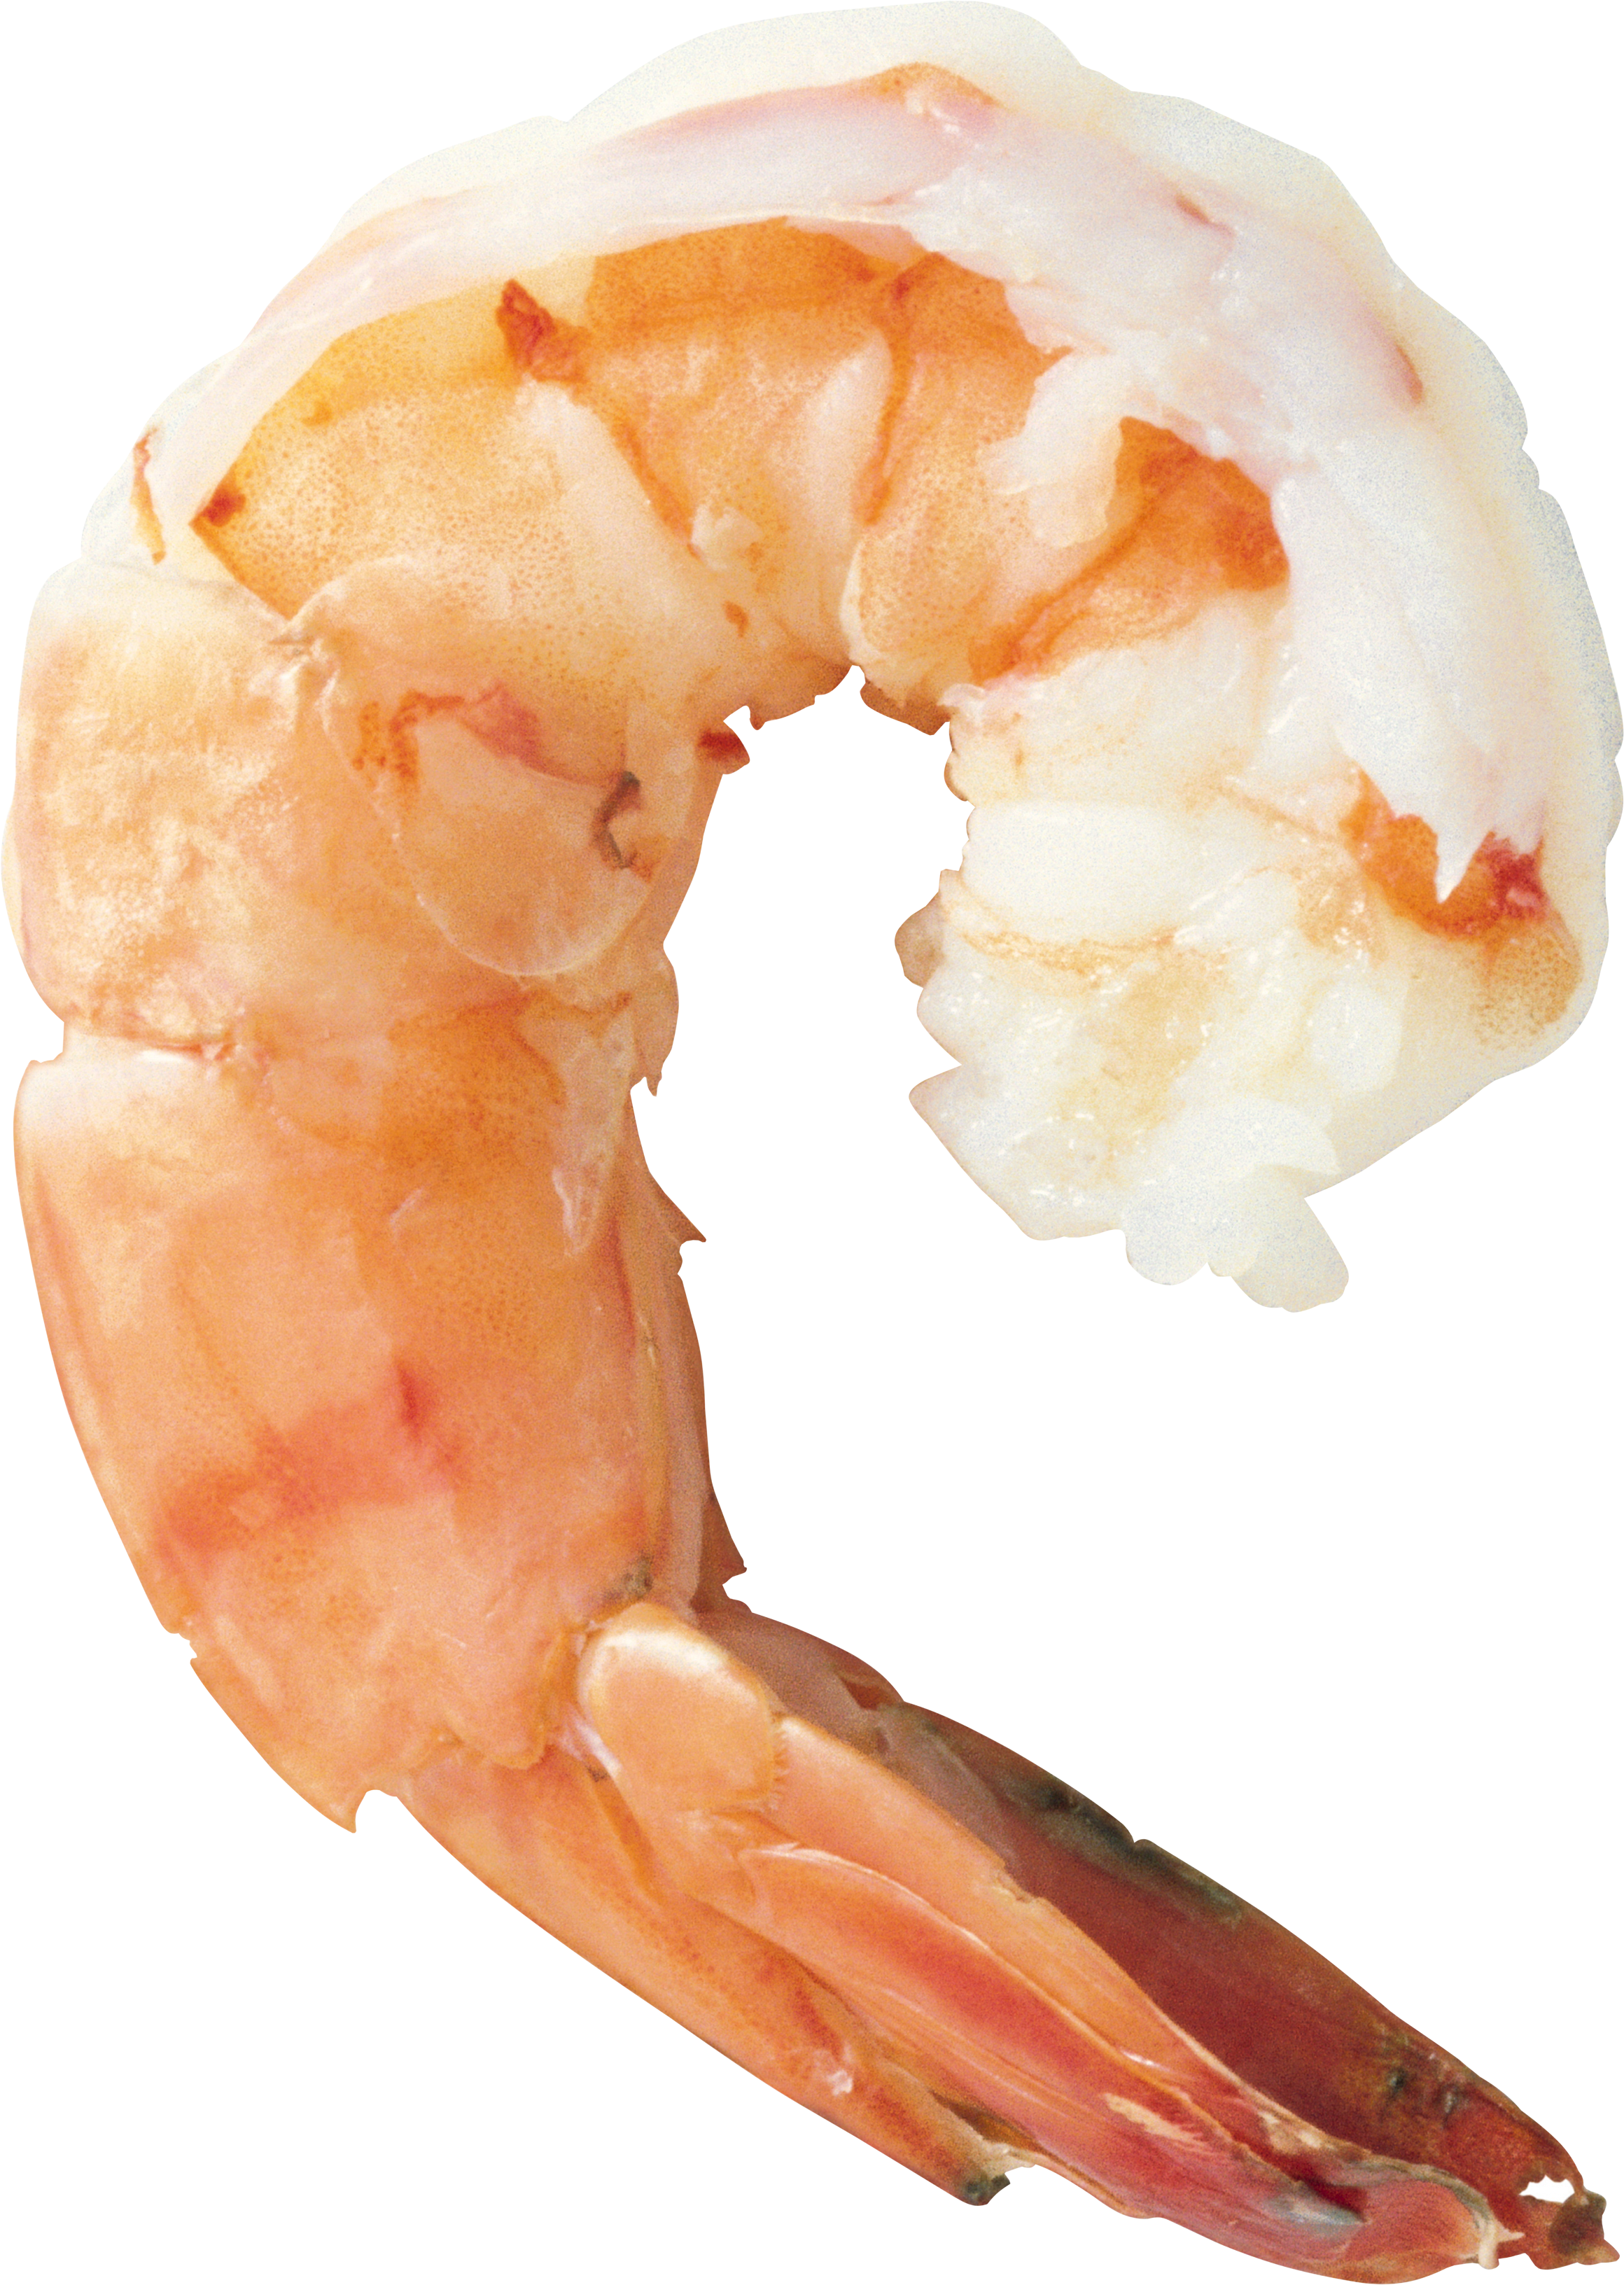 A Close Up Of A Shrimp